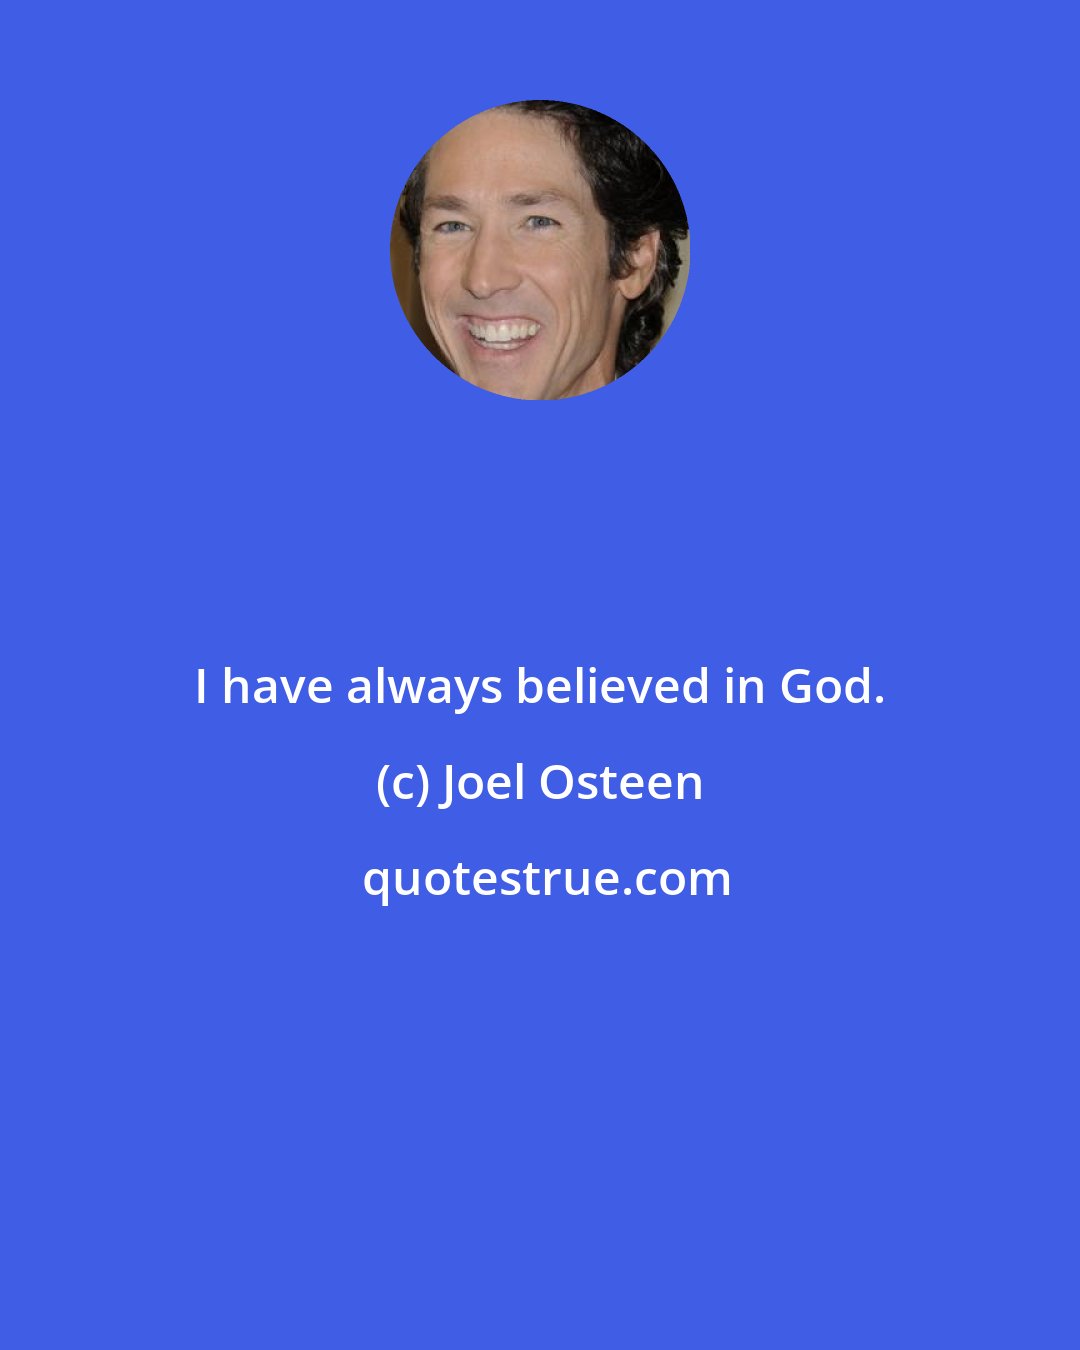 Joel Osteen: I have always believed in God.